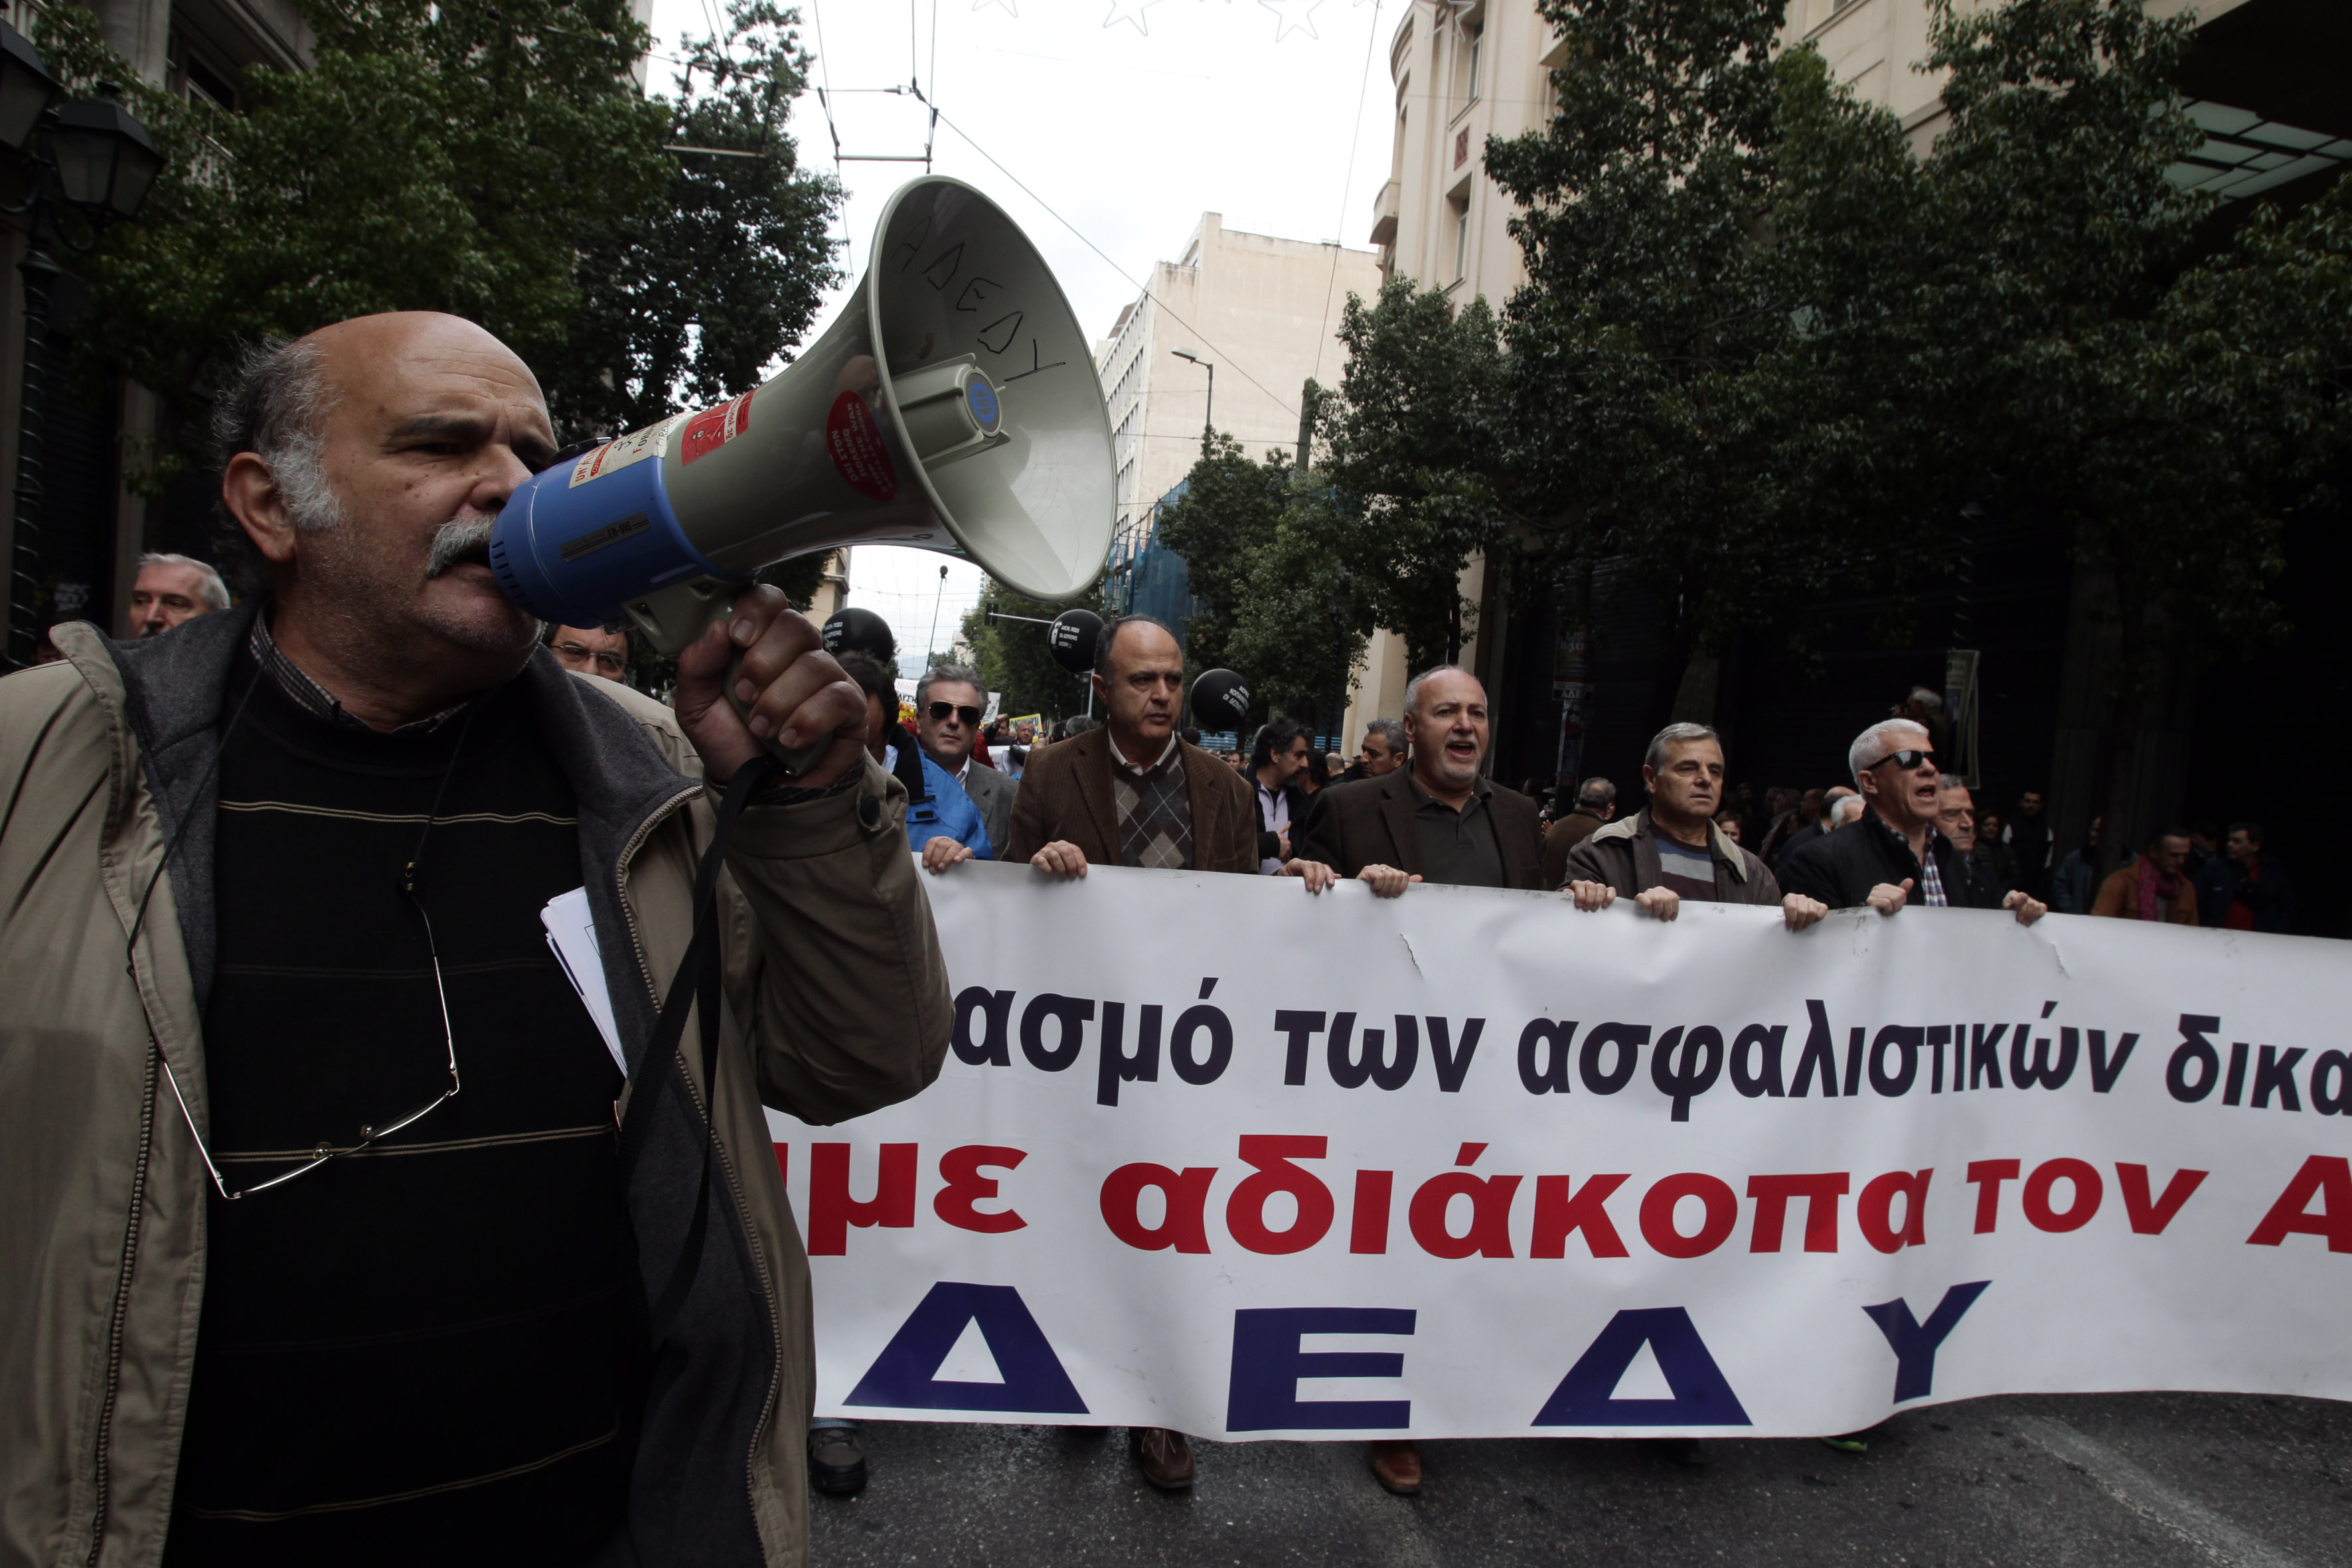 ΑΔΕΔΥ: «Γερασμένοι» δημόσιοι υπάλληλοι στην Ελλάδα